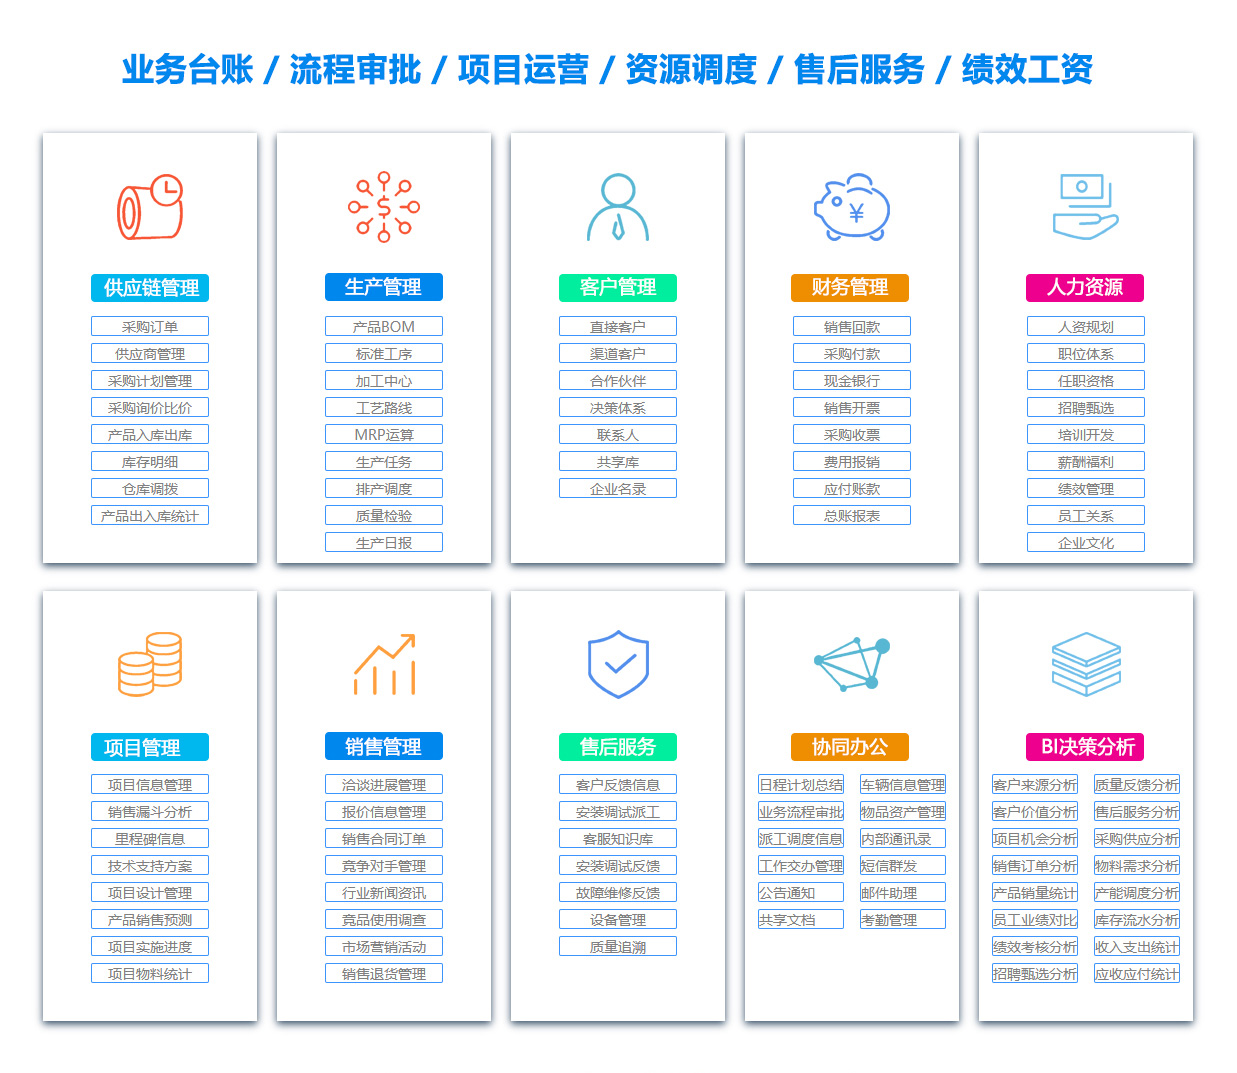 荆州SCM:供应链管理系统